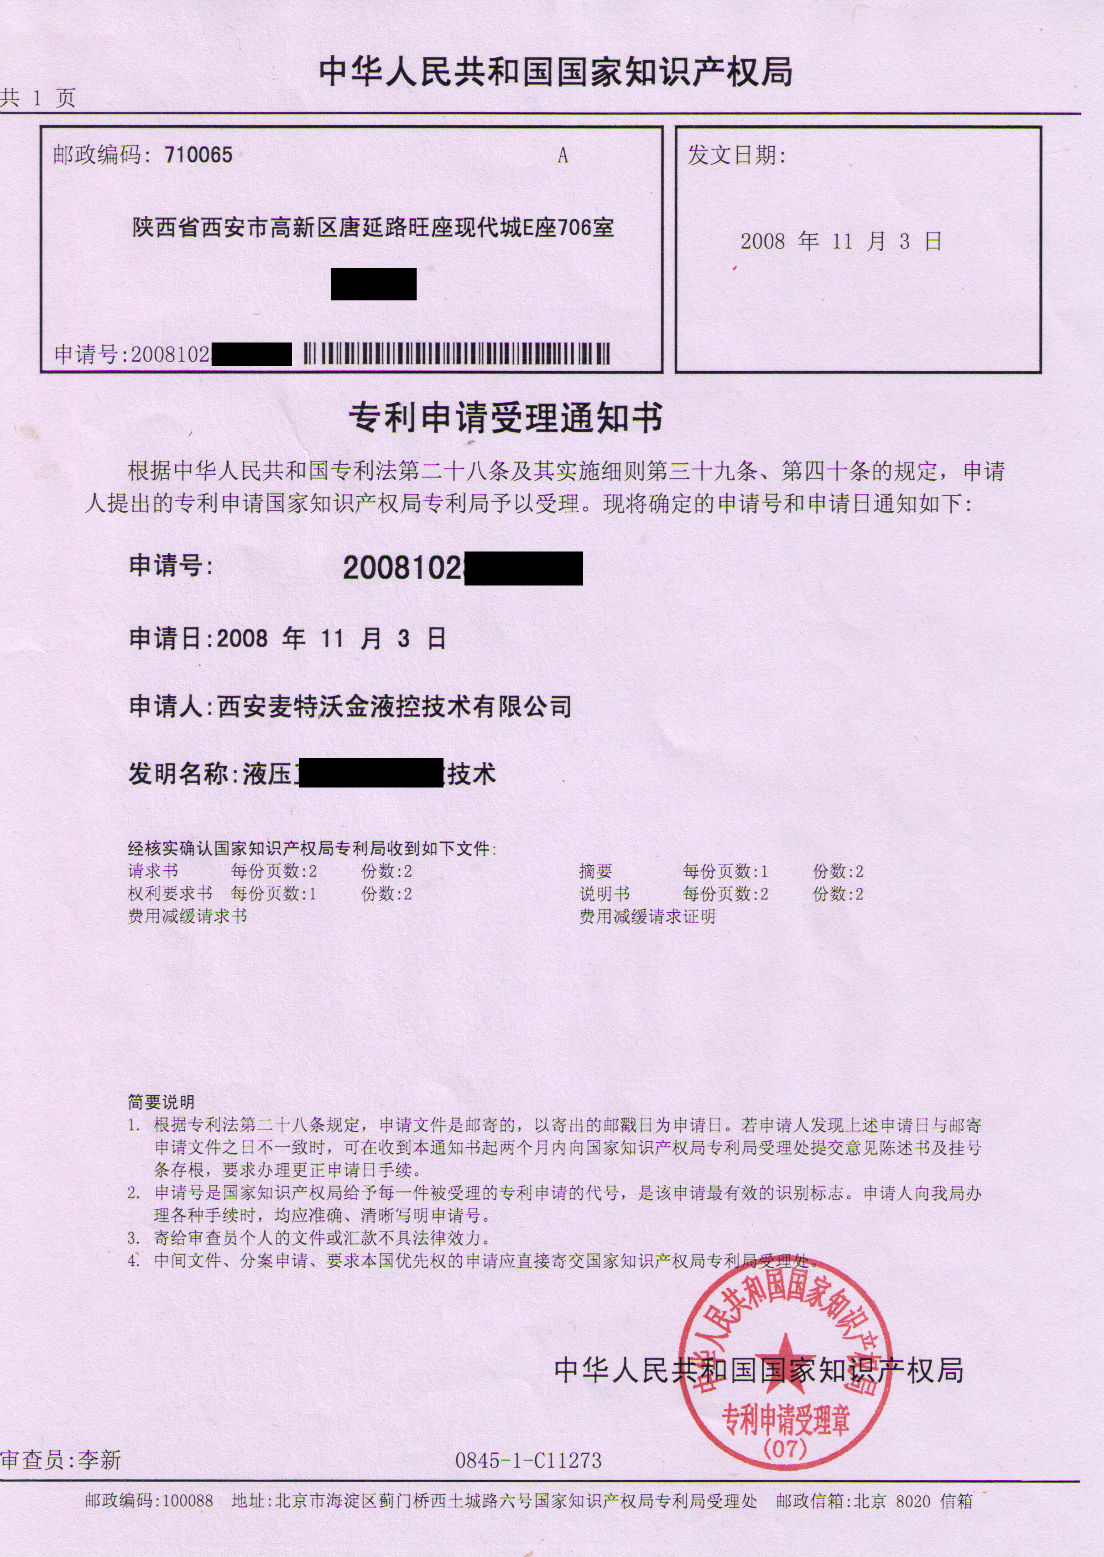 patent certificate of Metalwk 